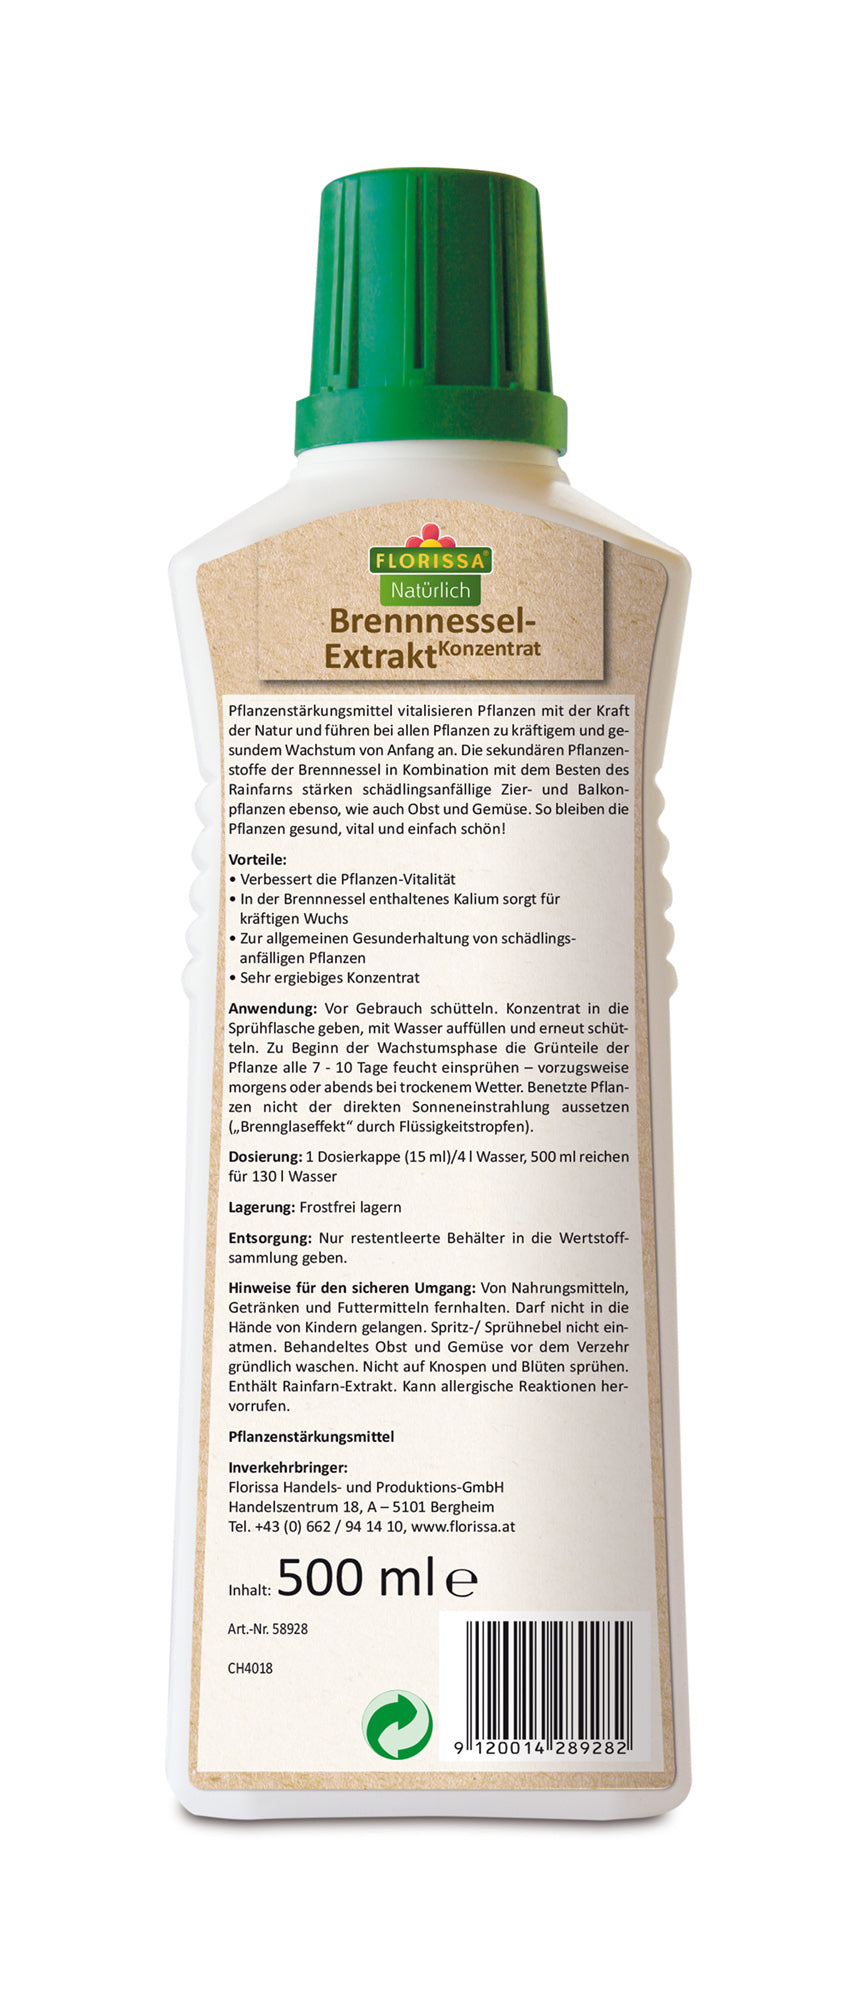 Brennnessel-Extrakt Konzentrat (500ml) | BIO Pflanzenschutz von Florissa